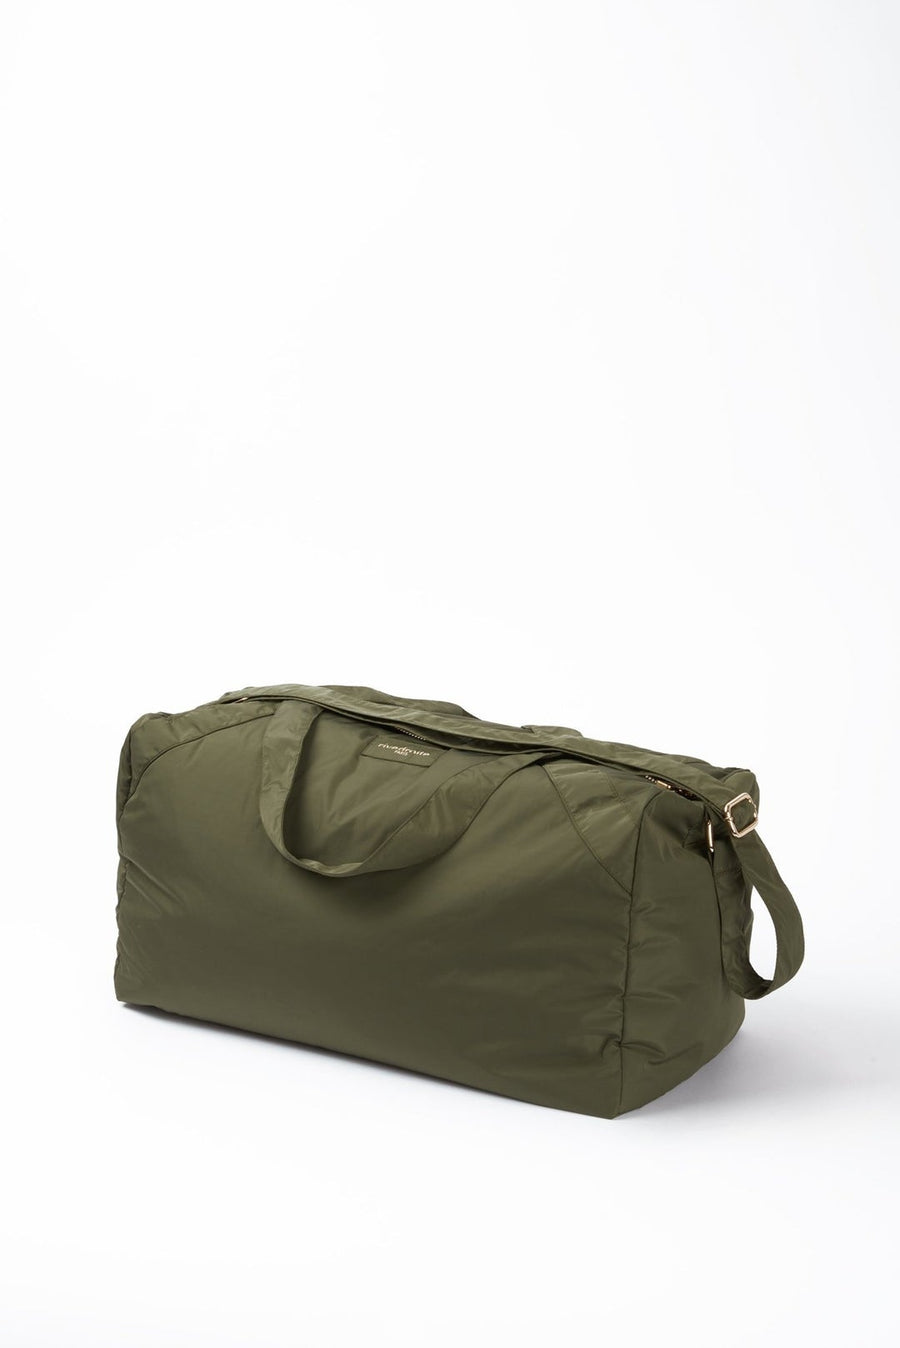 Ramus - The Weekender Bag Military Green